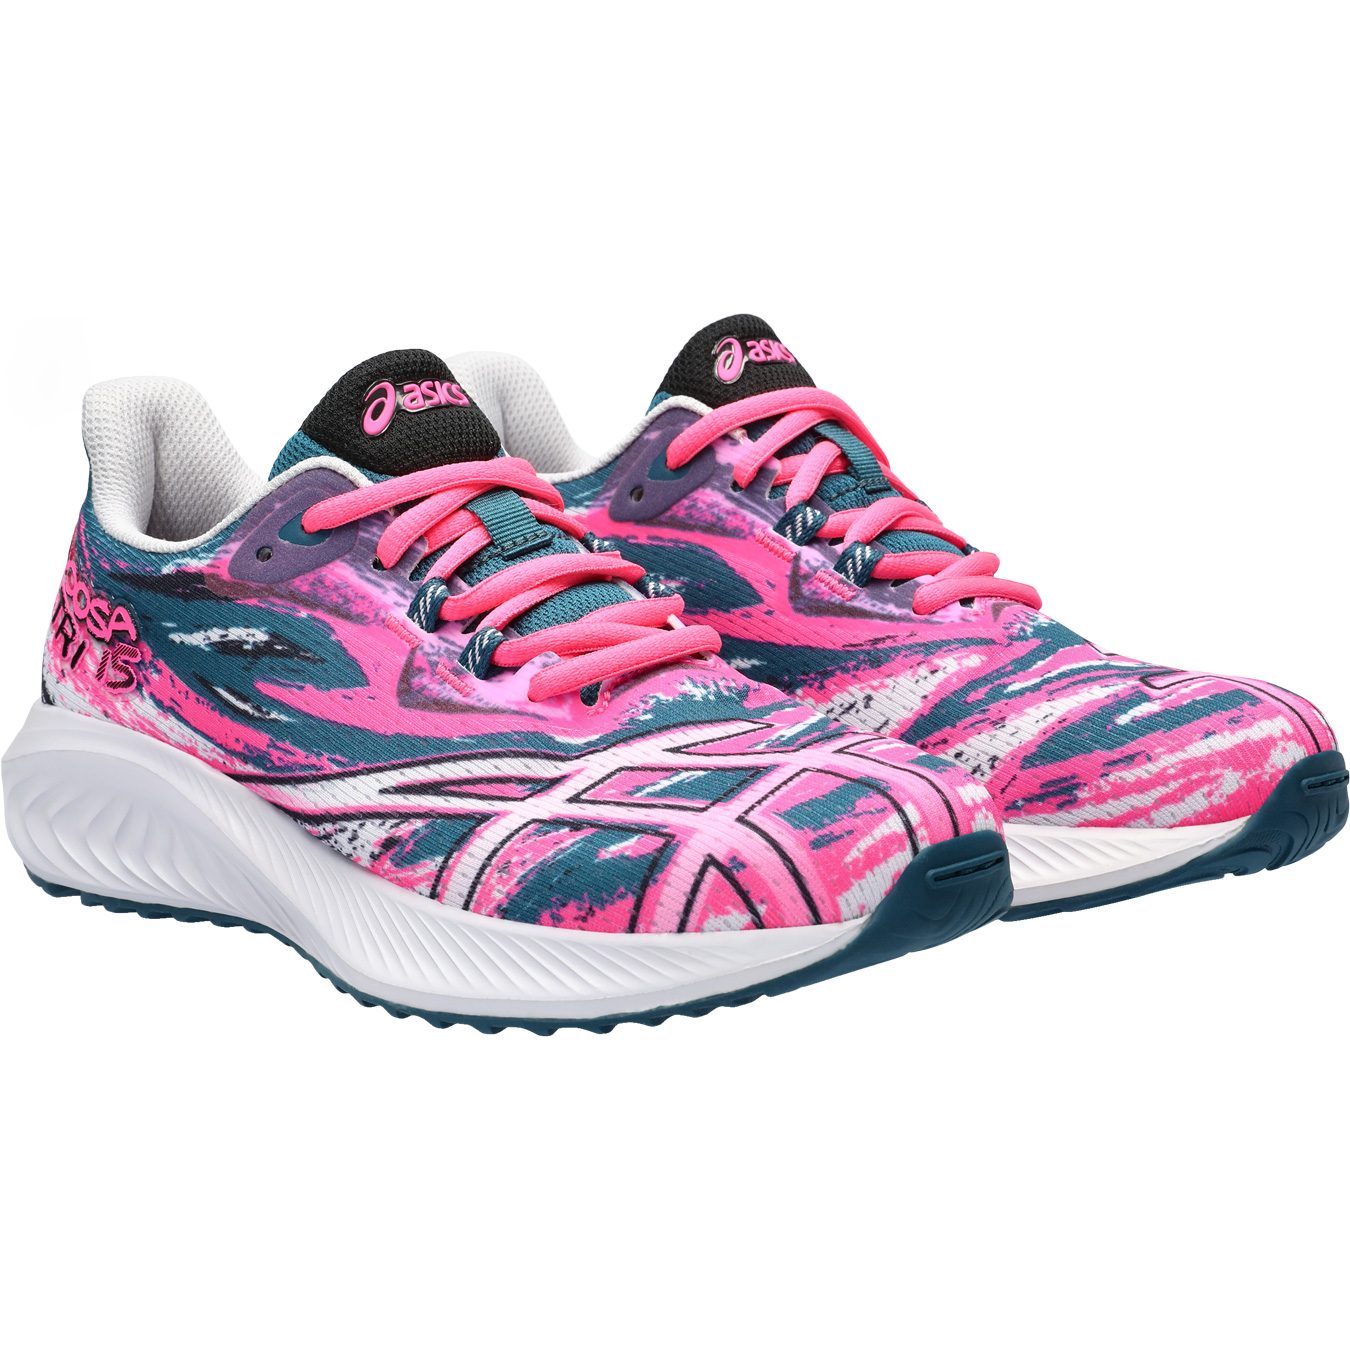 ASICS - Gel-Noosa TRI Bittl 15 Sport GS pink Shop Kids Shoes at Running hot